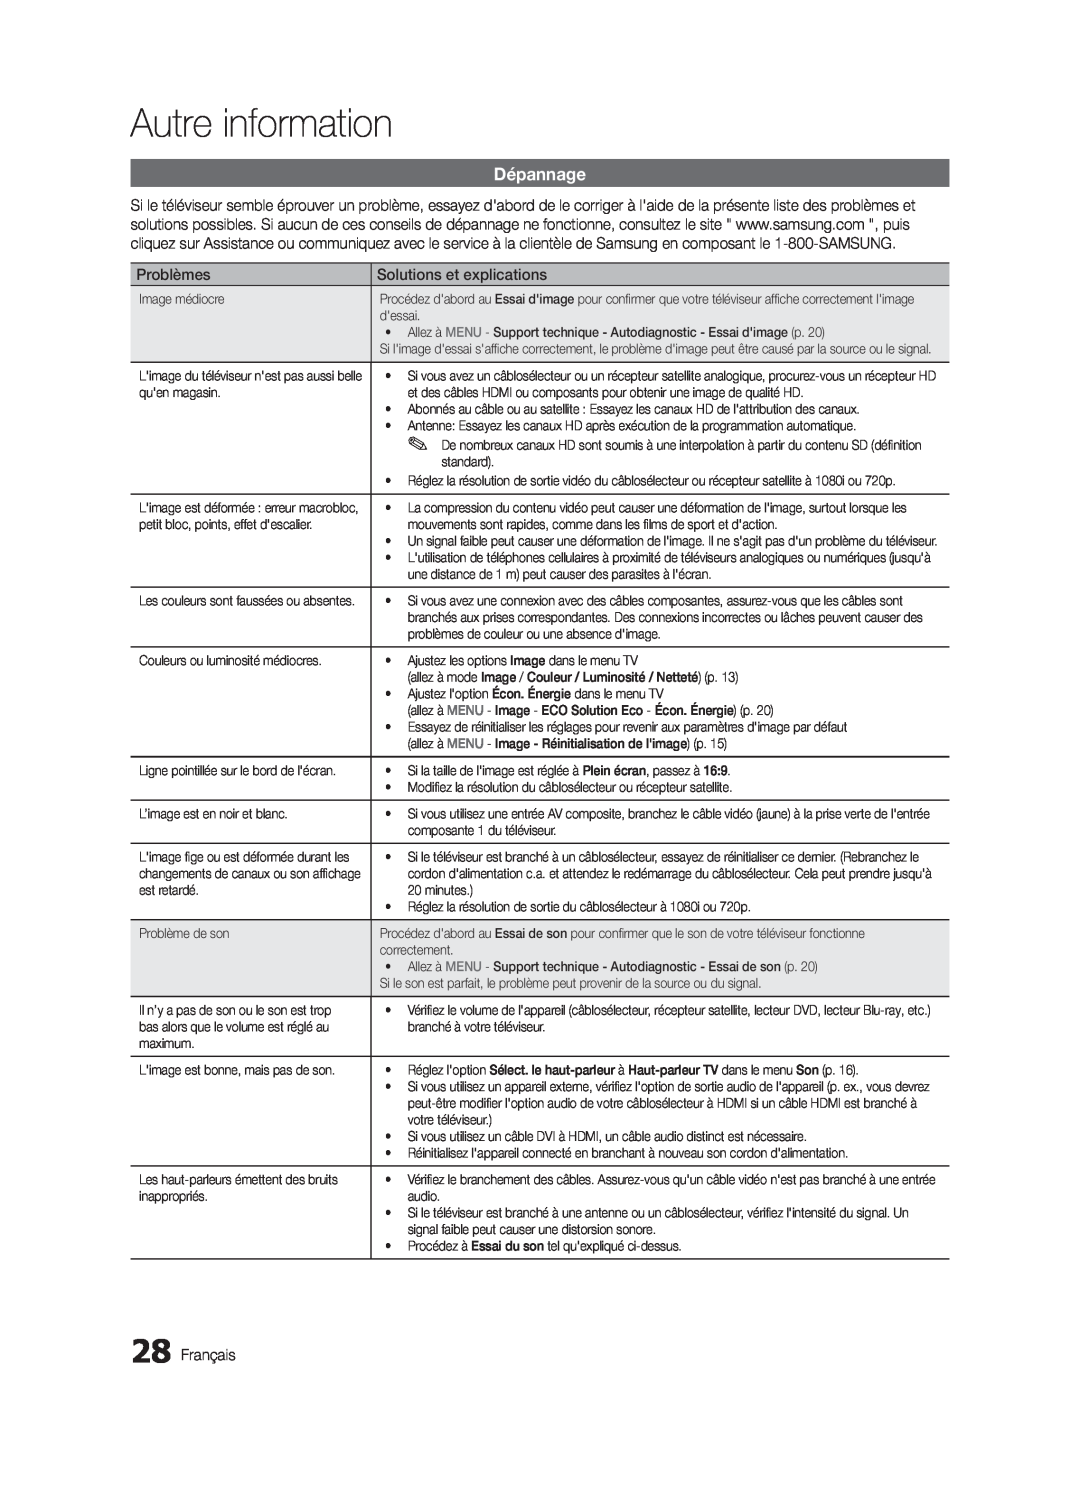 Samsung BN68-02620B-06 user manual Dépannage, Autre information, Problèmes, Solutions et explications, Français 